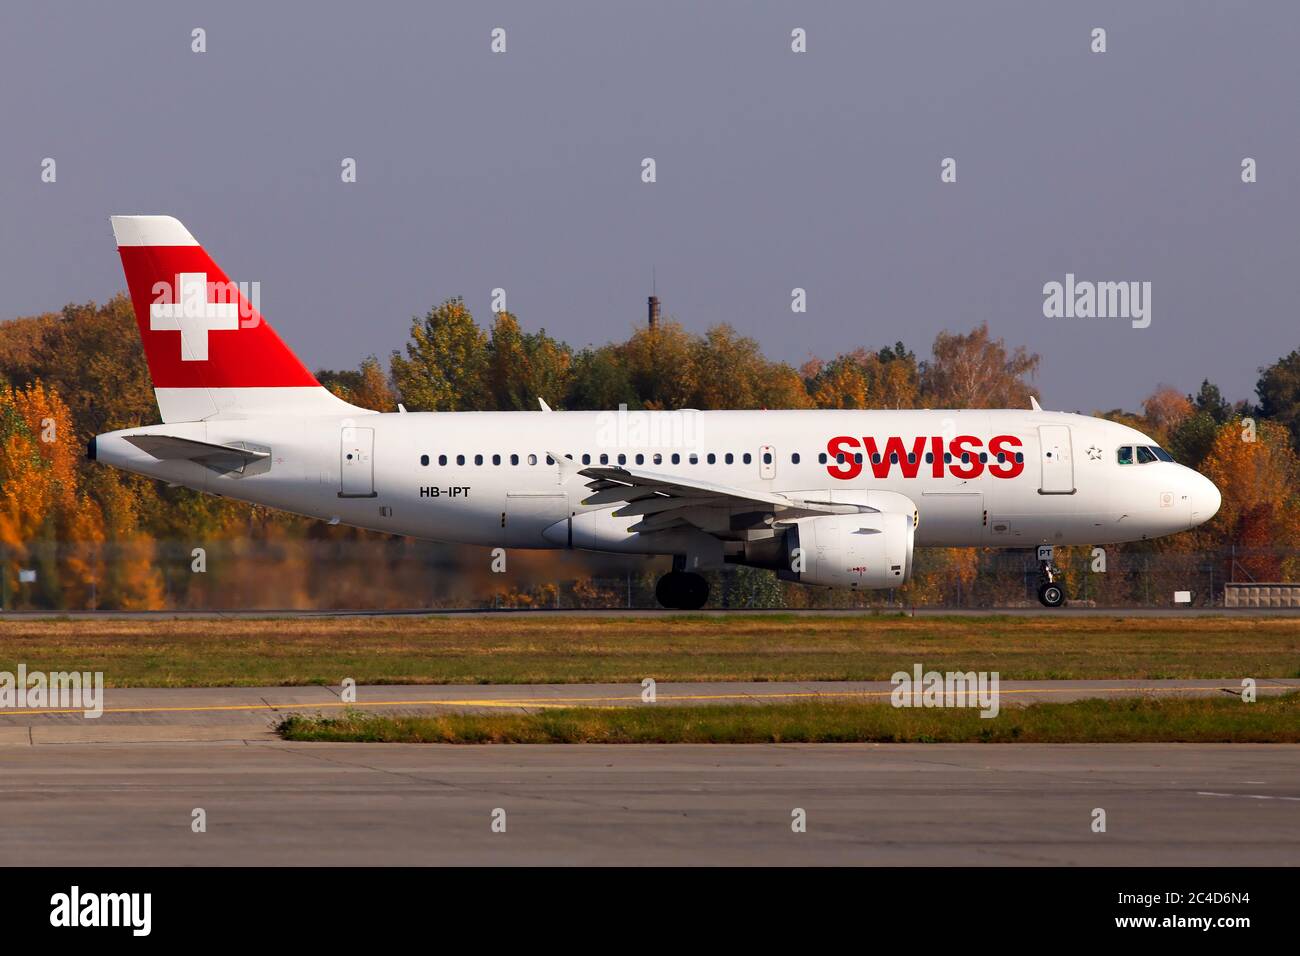 Borispol, Ucrania - 17 de octubre de 2018: Aviones Airbus A320 de Swiss International Airlines que corren en la pista del aeropuerto internacional de Borispol Foto de stock